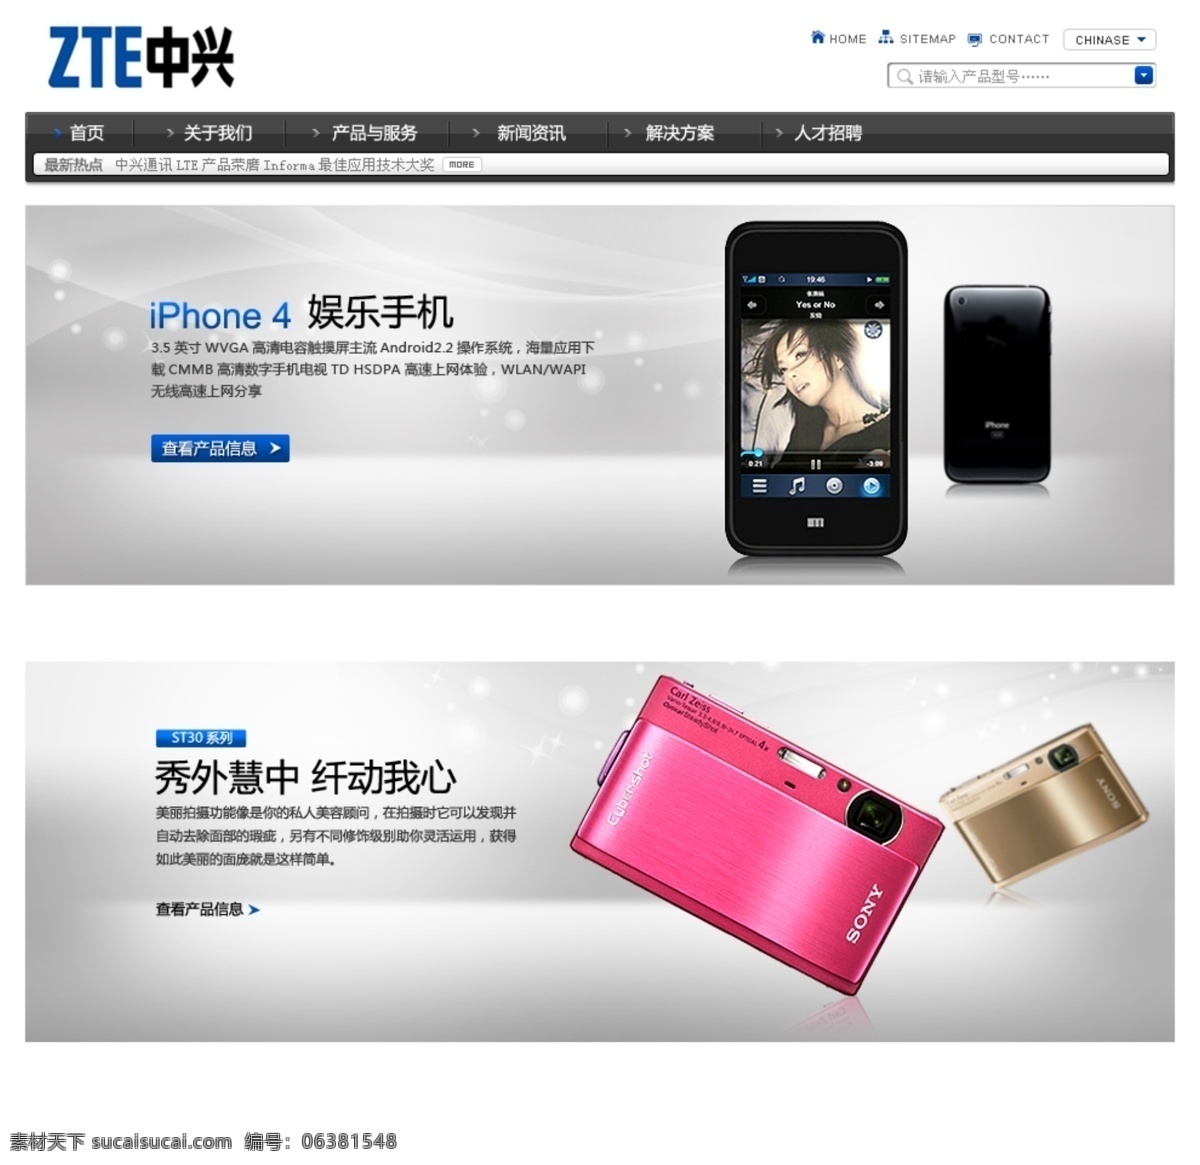 中兴手机 相机 手机网页 手机 中文模版 网页模板 源文件